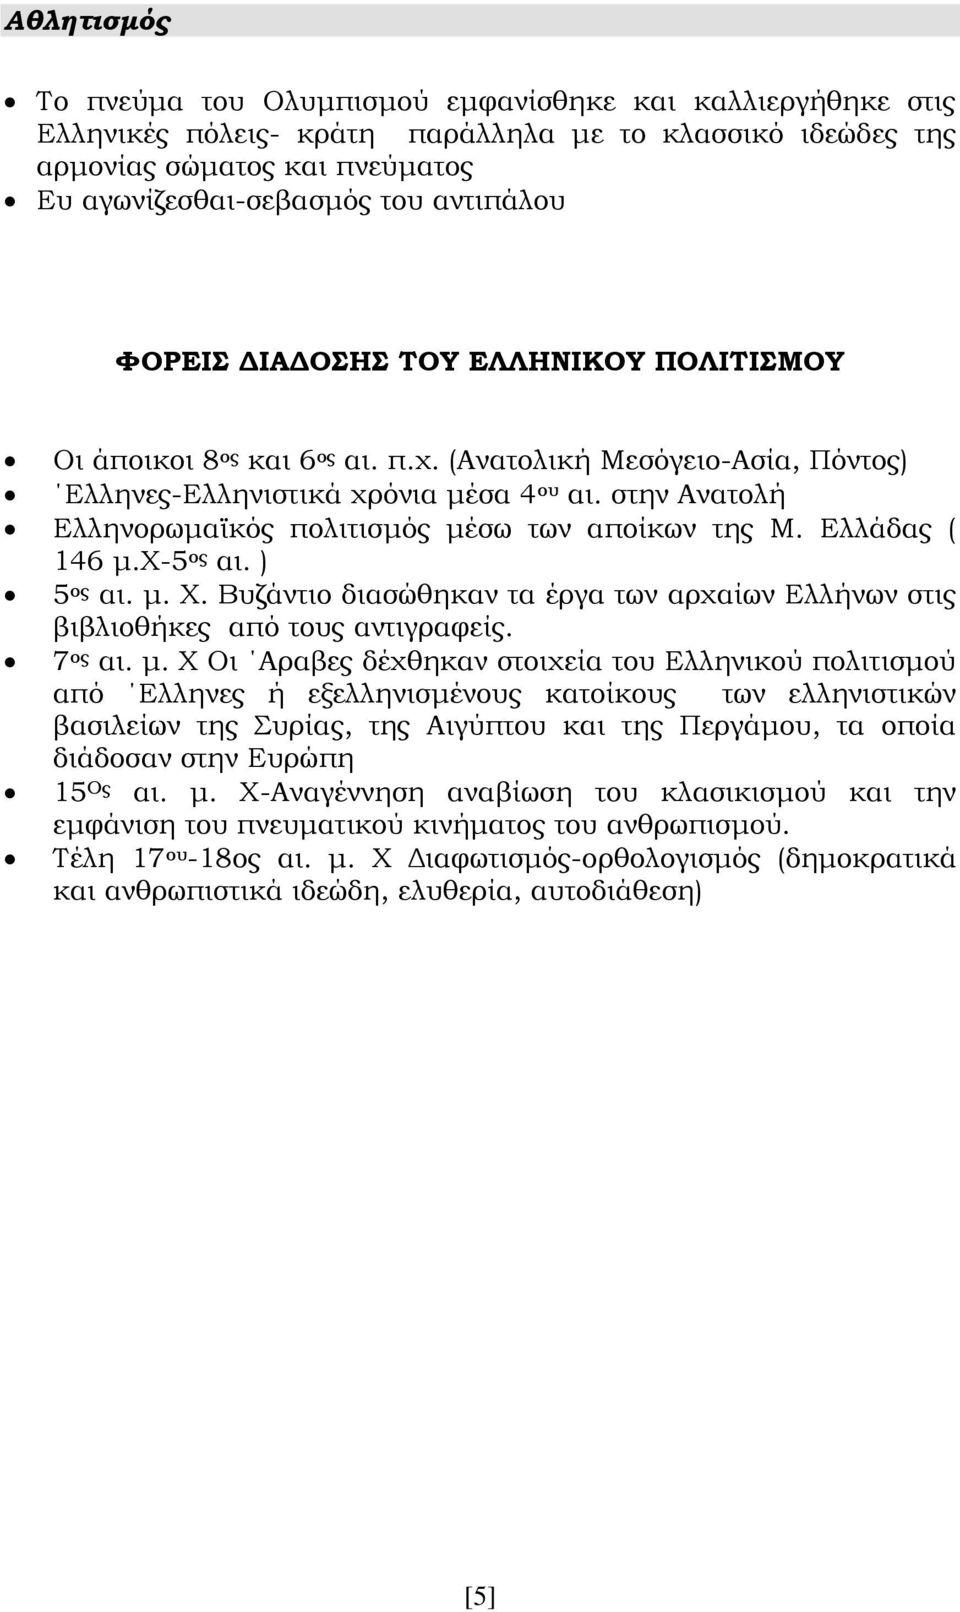 στην Ανατολή Ελληνορωμαϊκός πολιτισμός μέσω των αποίκων της Μ. Ελλάδας ( 146 μ.χ-5 ος αι. ) 5 ος αι. μ. Χ. Βυζάντιο διασώθηκαν τα έργα των αρχαίων Ελλήνων στις βιβλιοθήκες από τους αντιγραφείς.